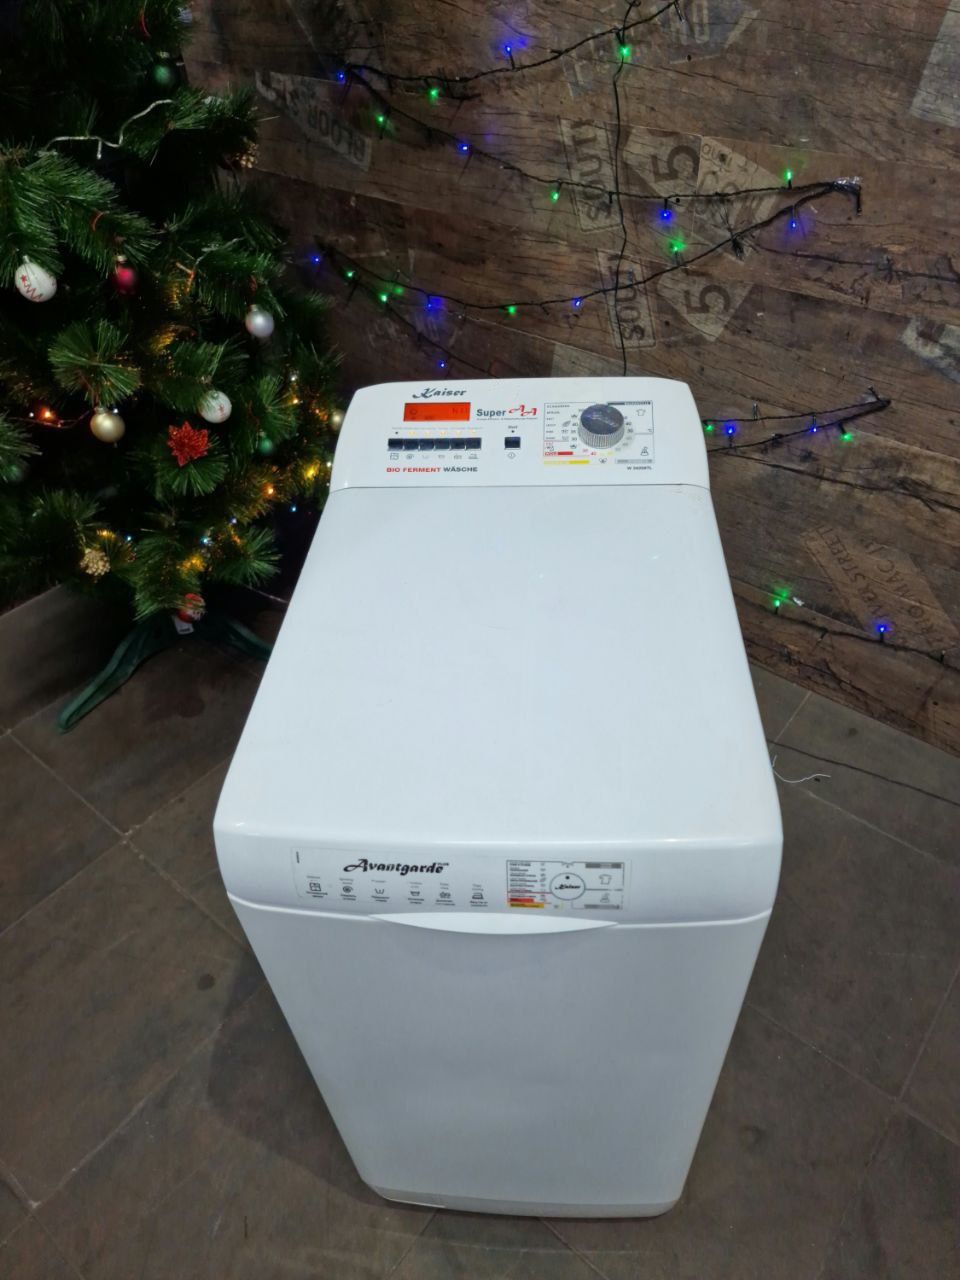 Вертикальная стиральная/пральна машина AEG Lavamat 7000 series